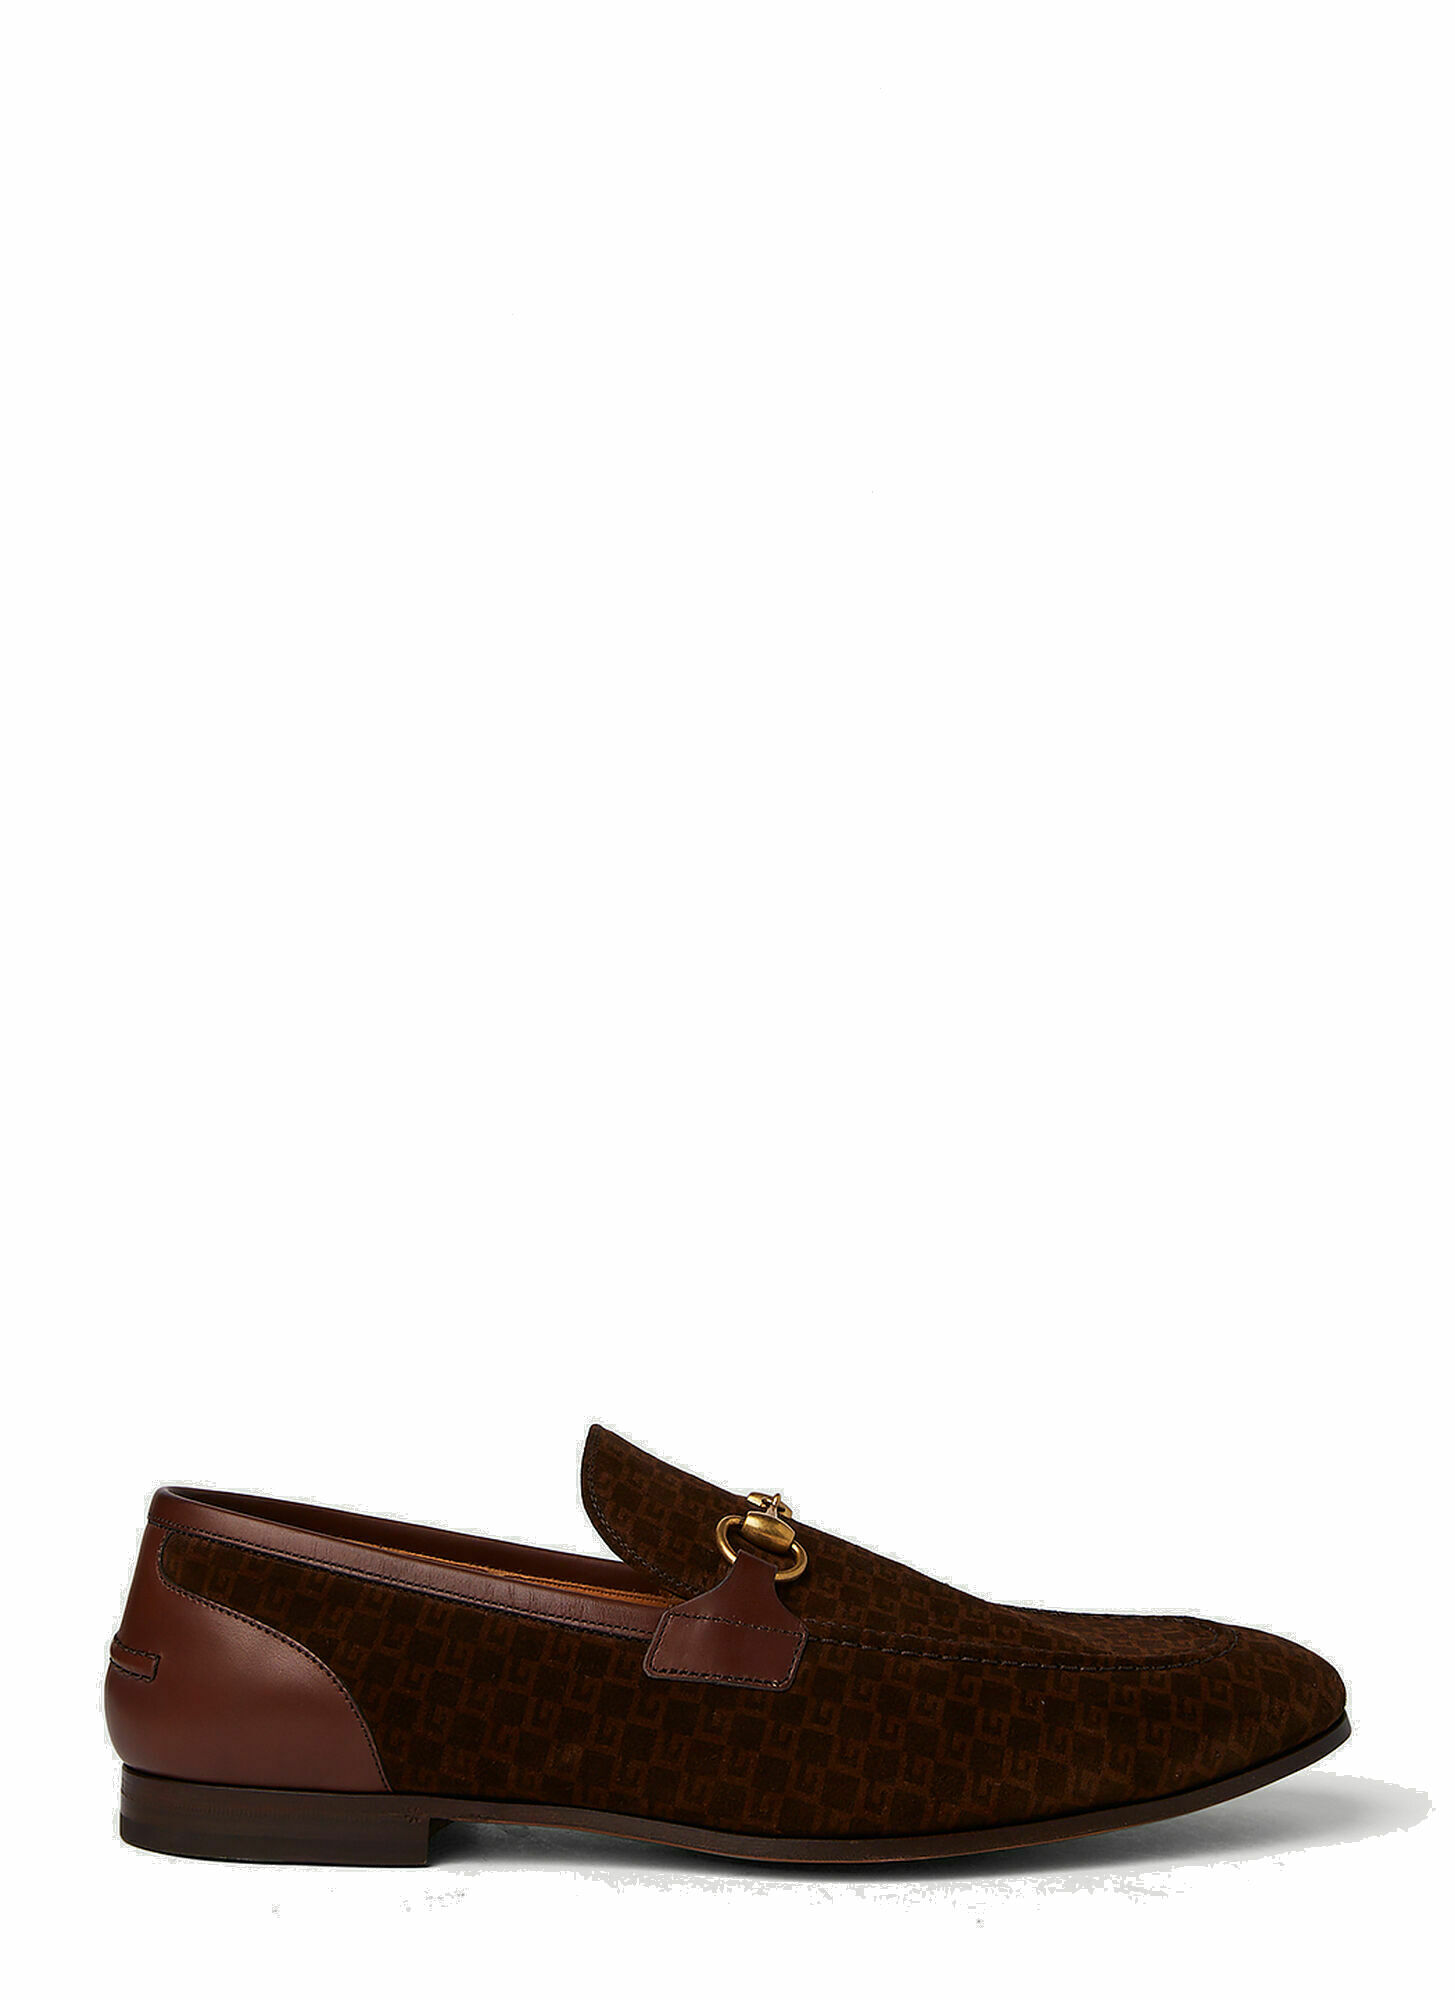 Photo: Jordaan Horsebit Loafers in Brown